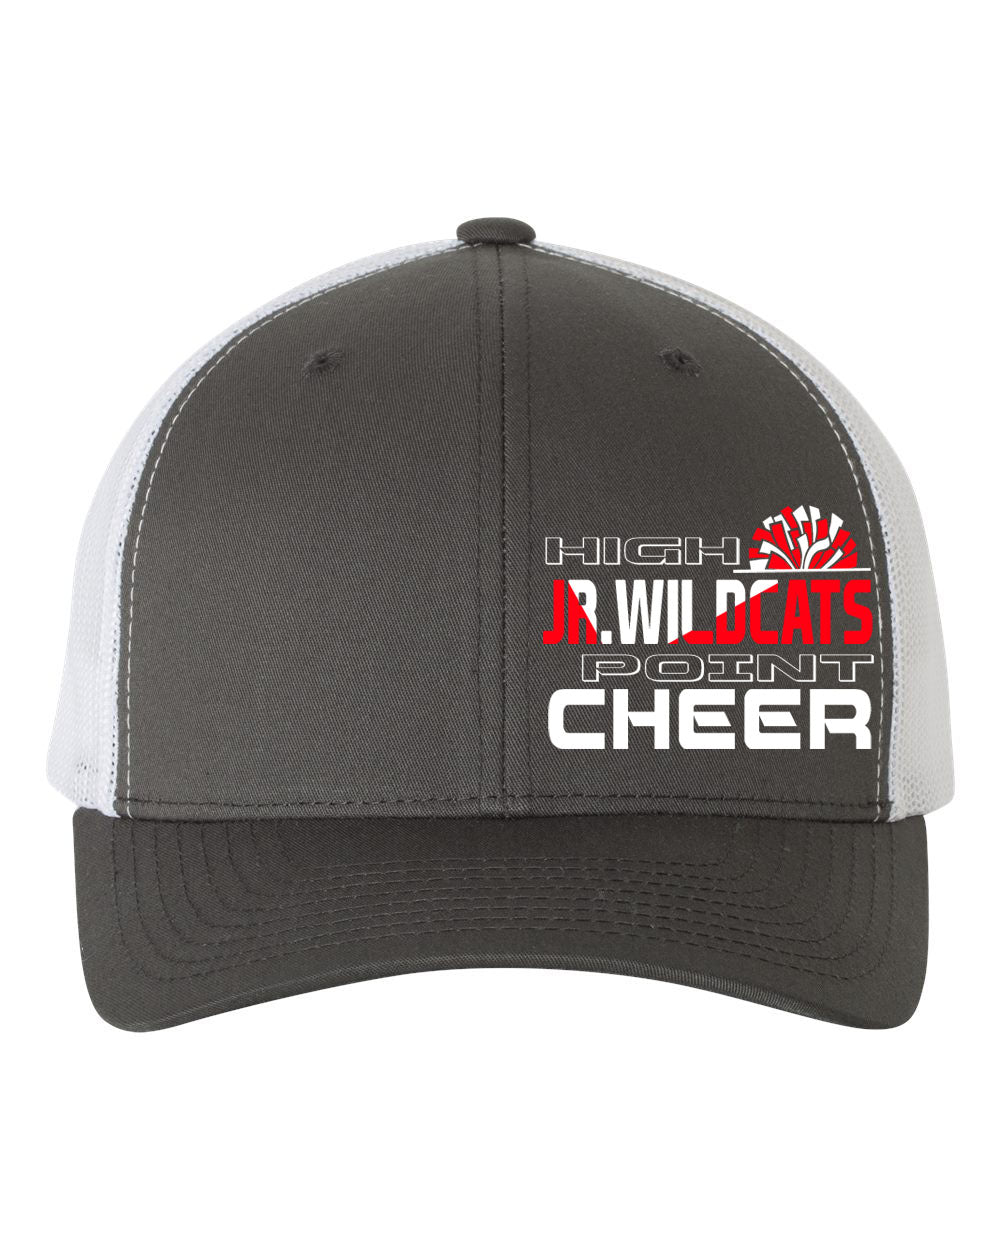 High Point Cheer Design 5 Trucker Hat